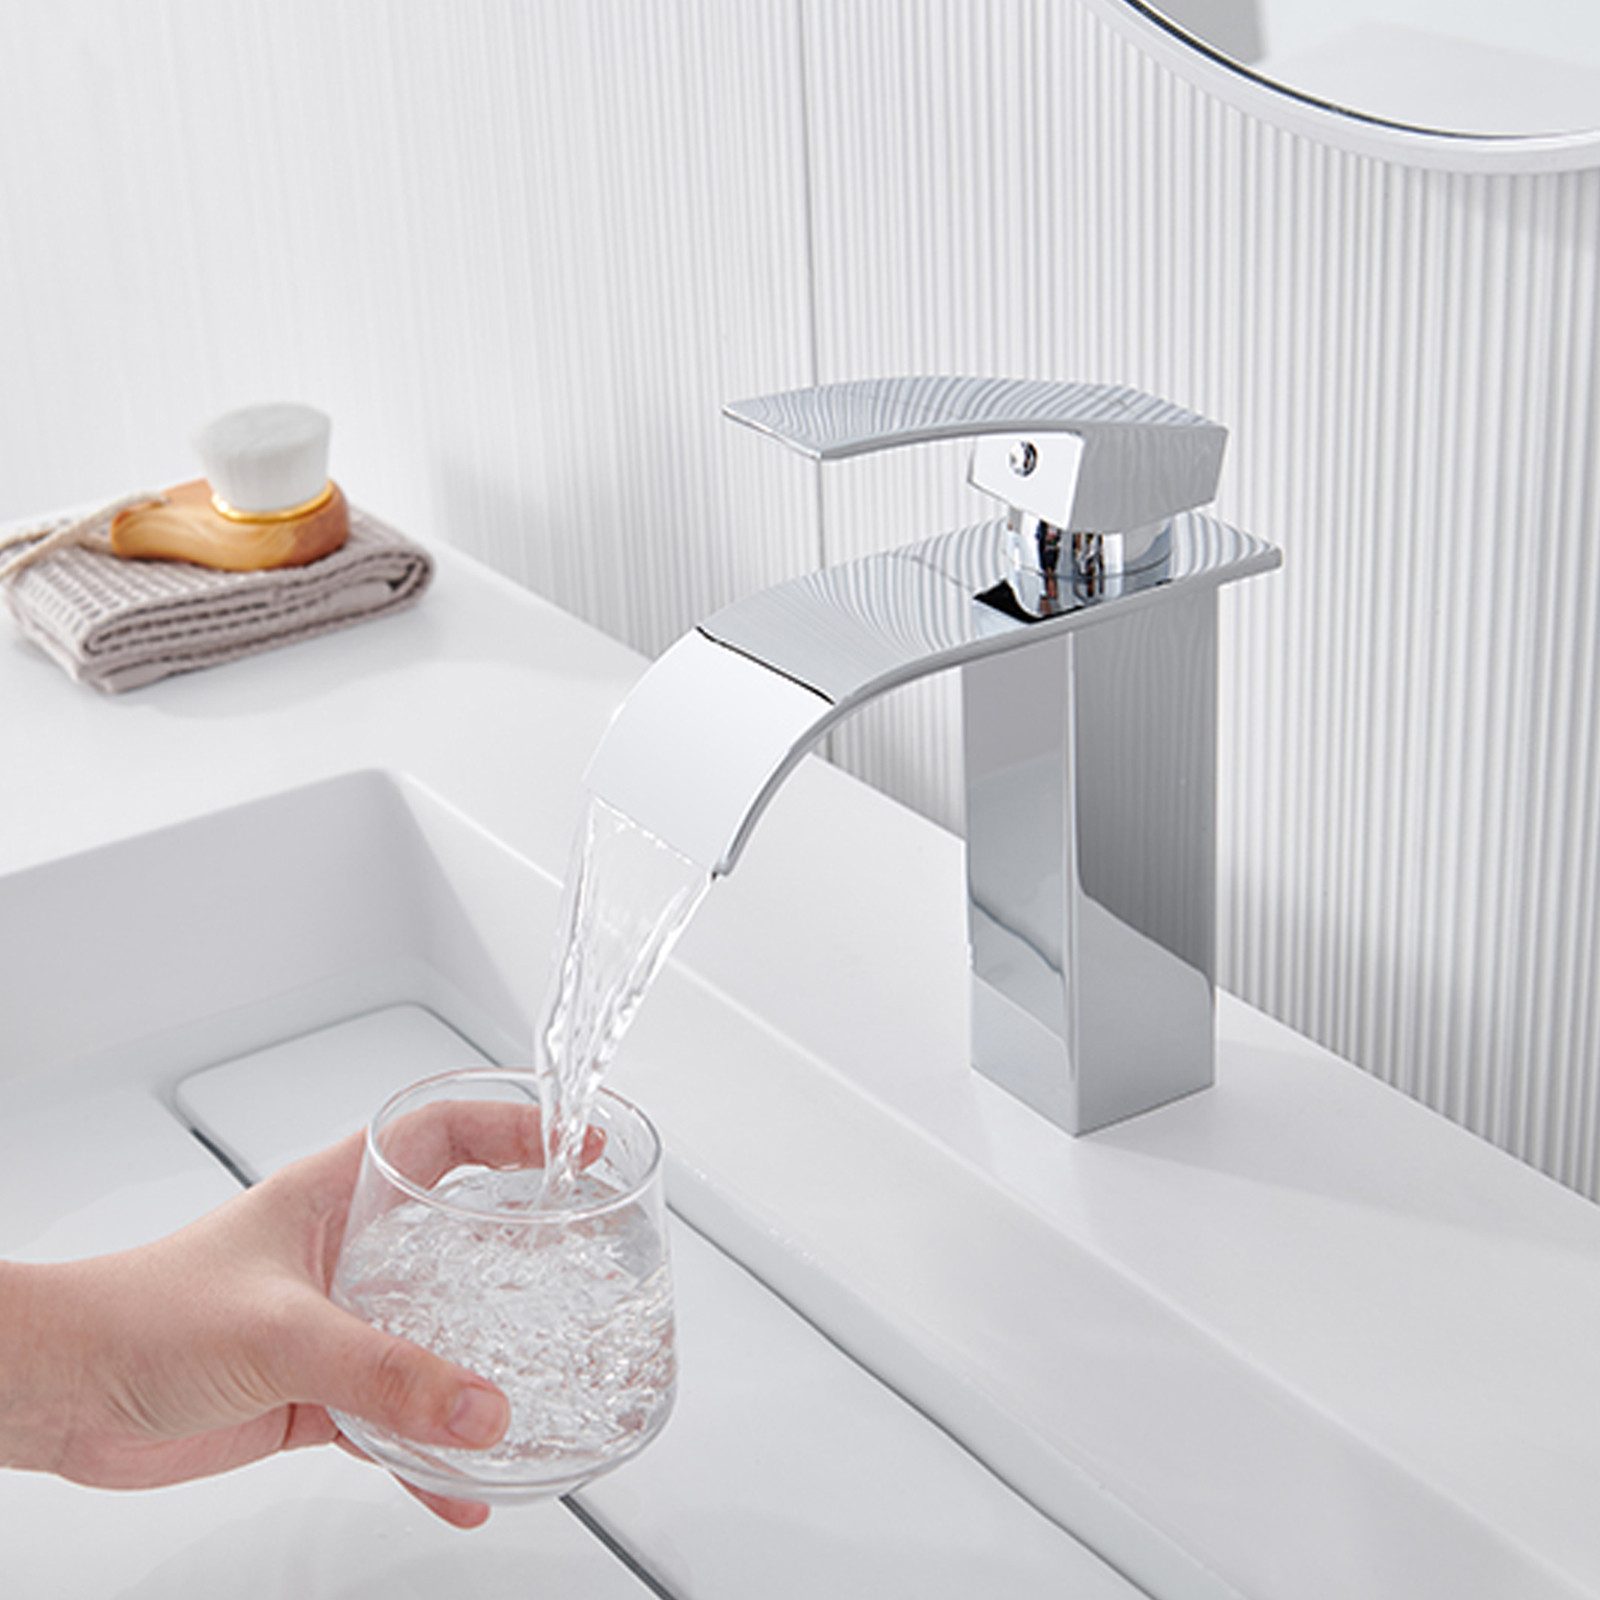 AuraLum pro Waschtischarmatur Wasserfall Wasserhahn Badarmatur Waschbecken Messing Mischbatterie Chrom